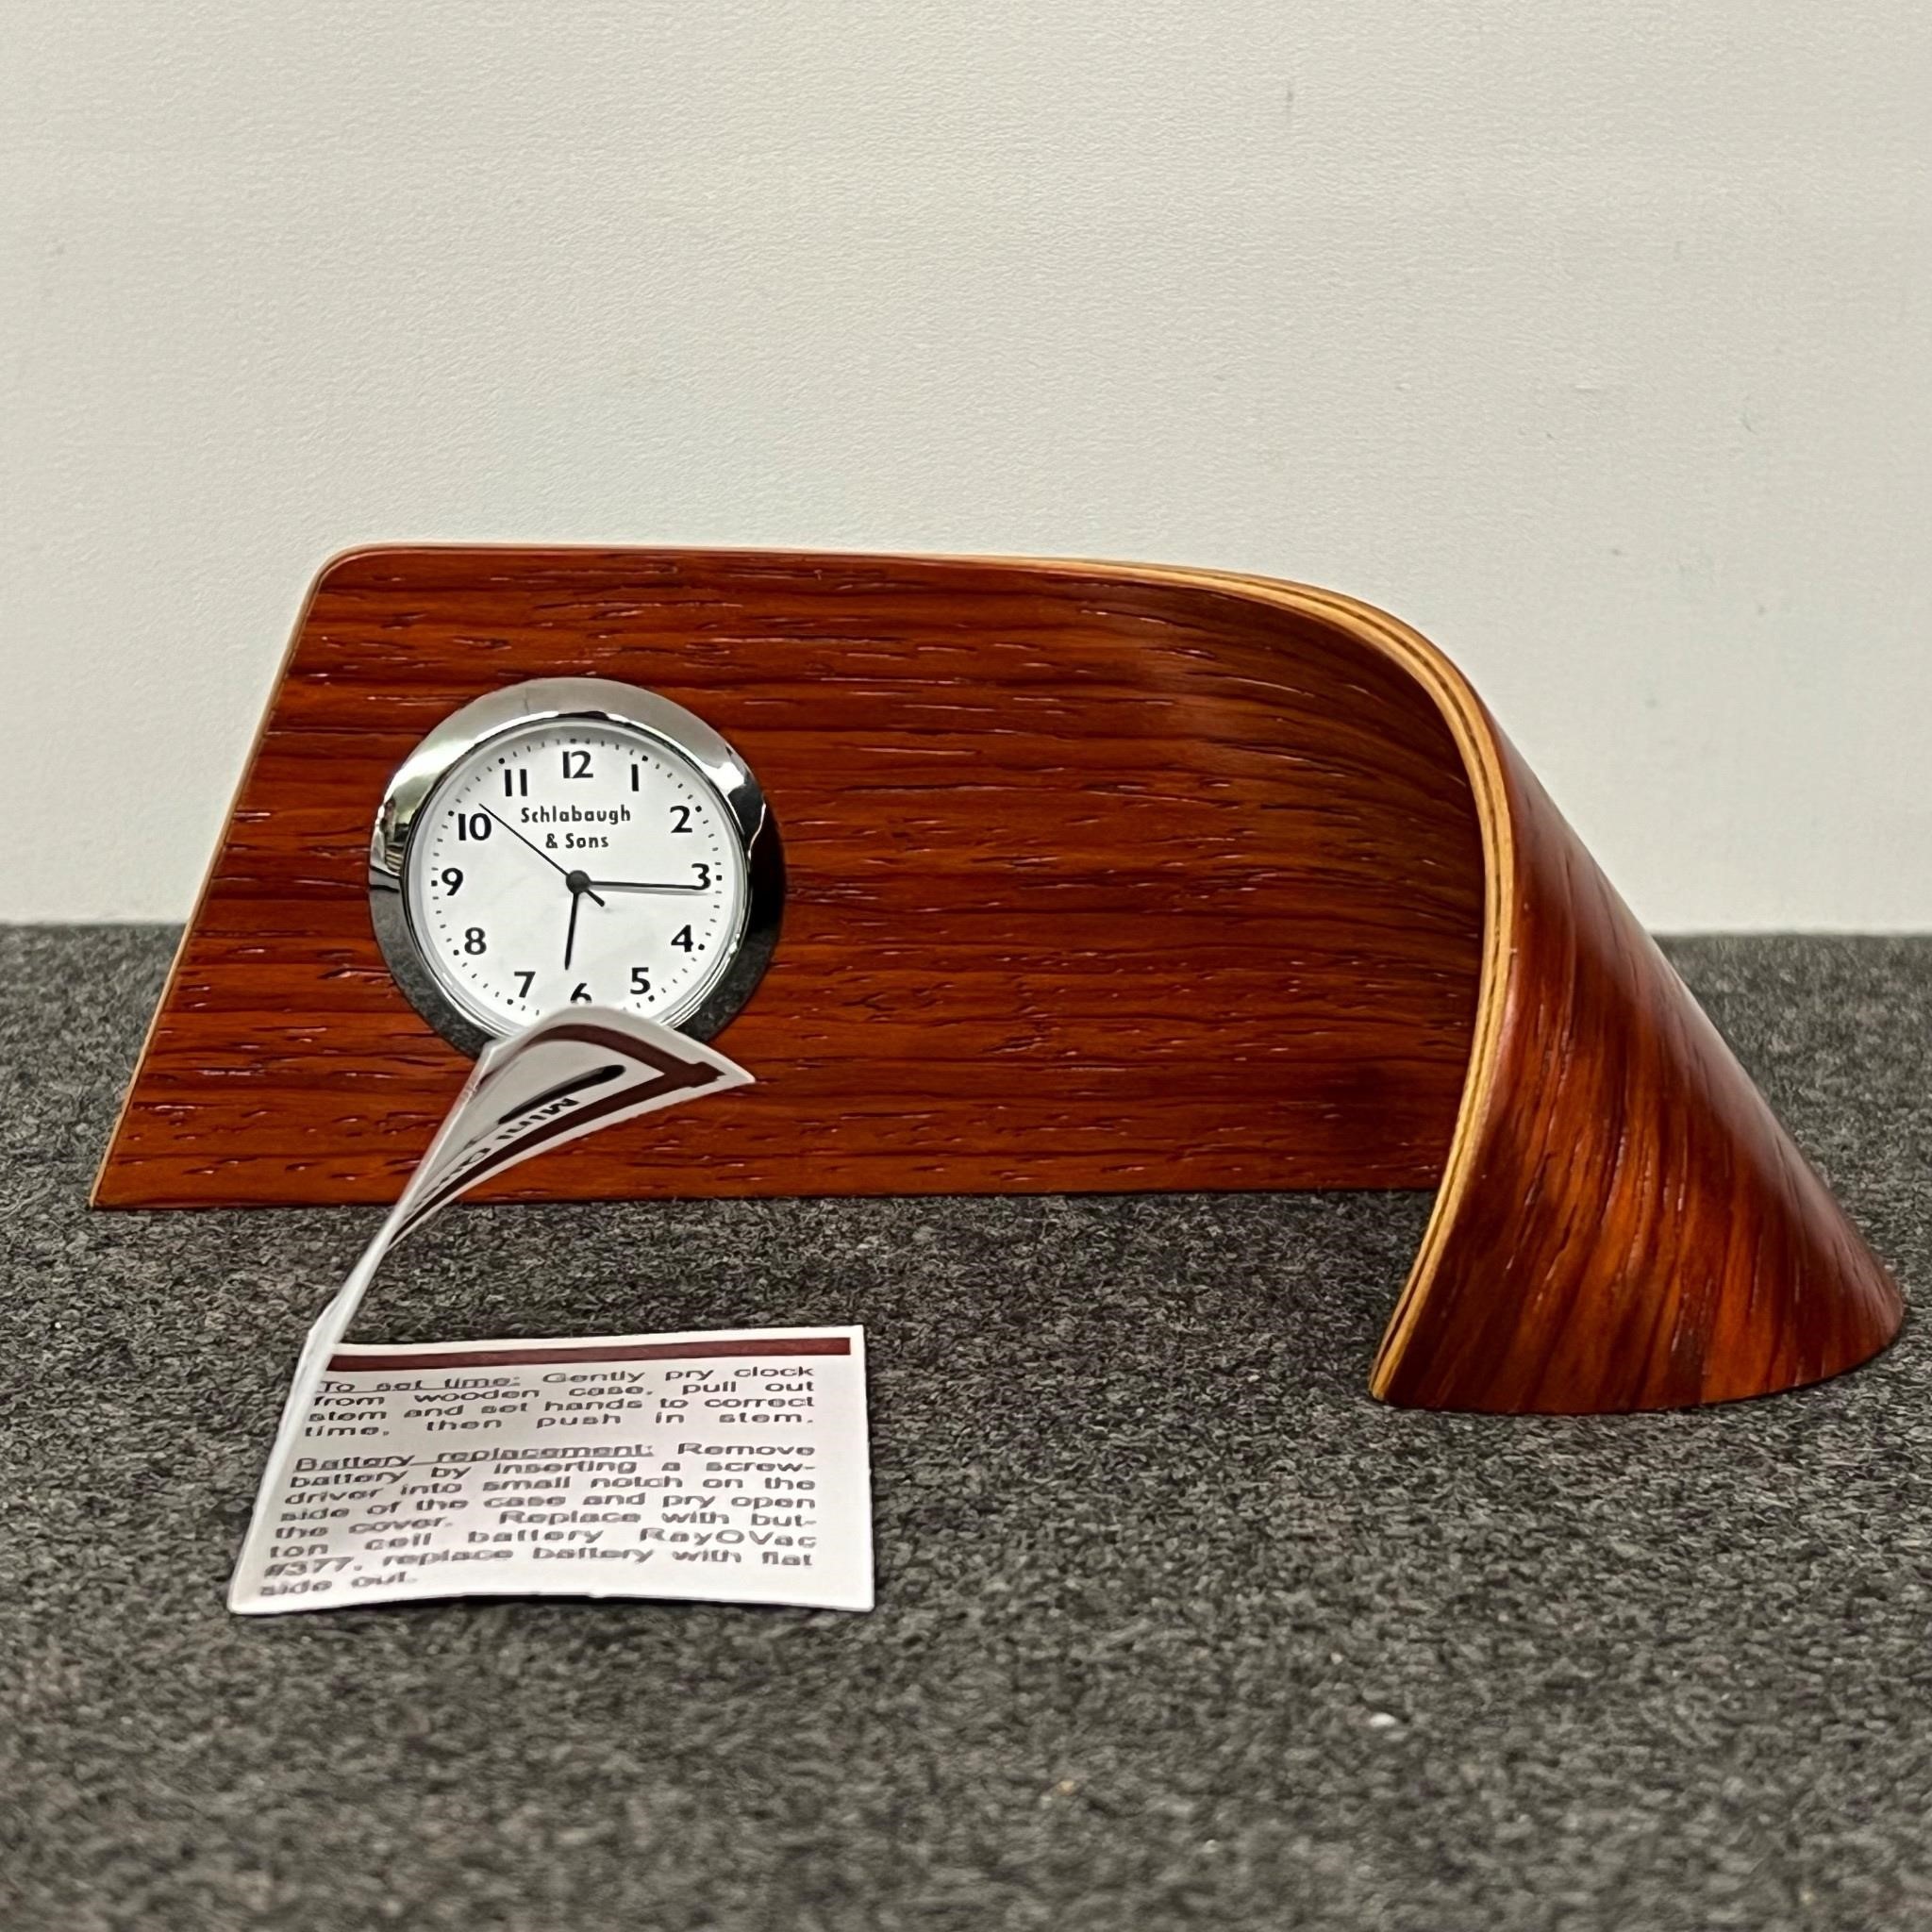 MCM Schlabaugh & Sons Desk Wood Clock